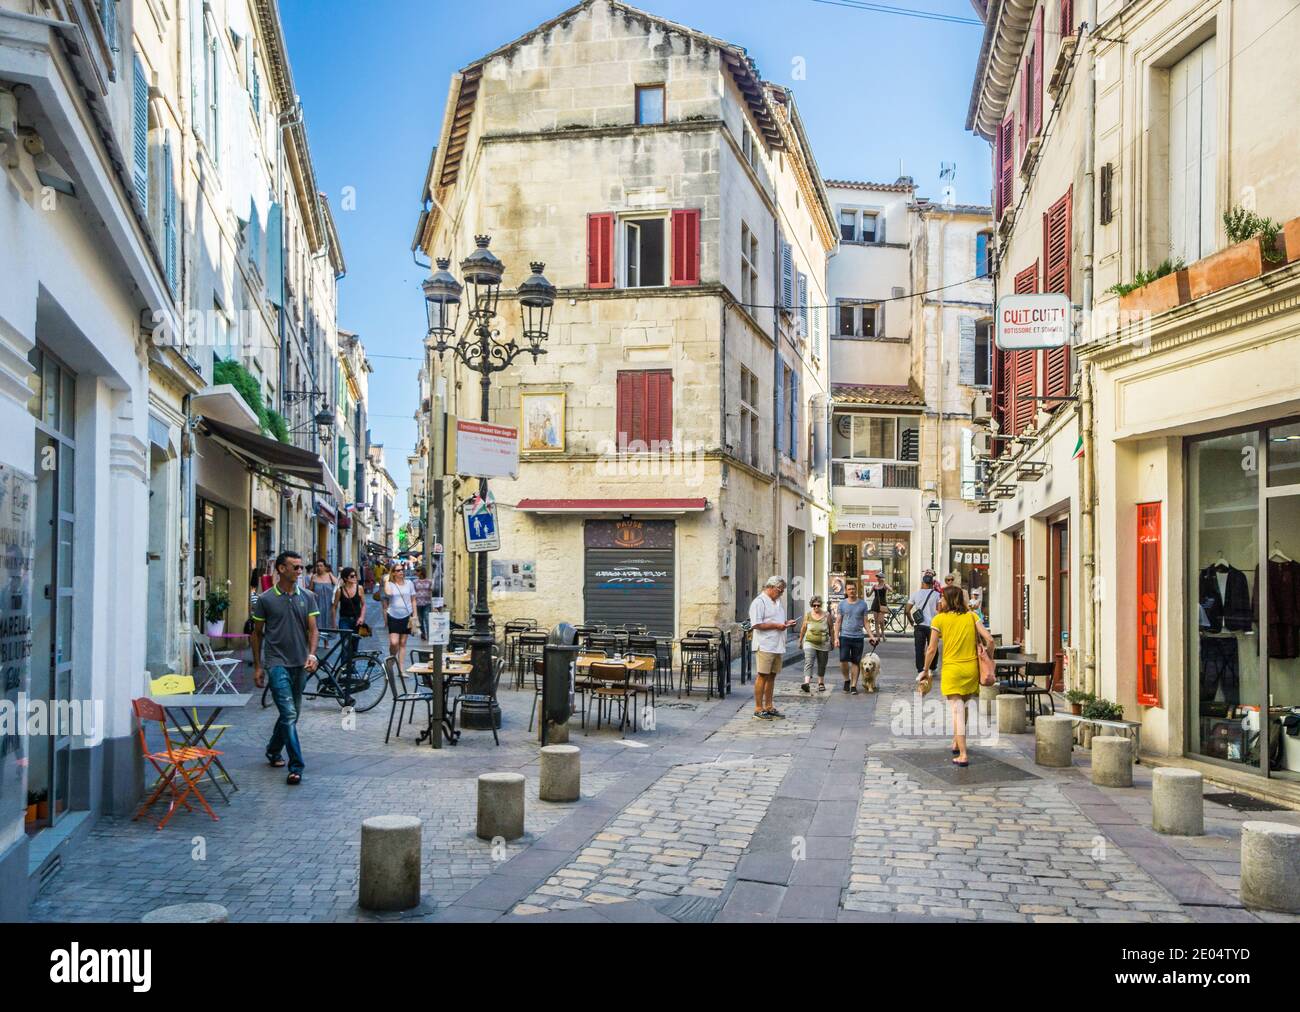 Rue de l'Hôtel de ville y Rue du Dr Fanton, calles estrechas pero animadas en la antigua ciudad de Arles, departamento de Bouches-du-Rhône, sur de Francia Foto de stock